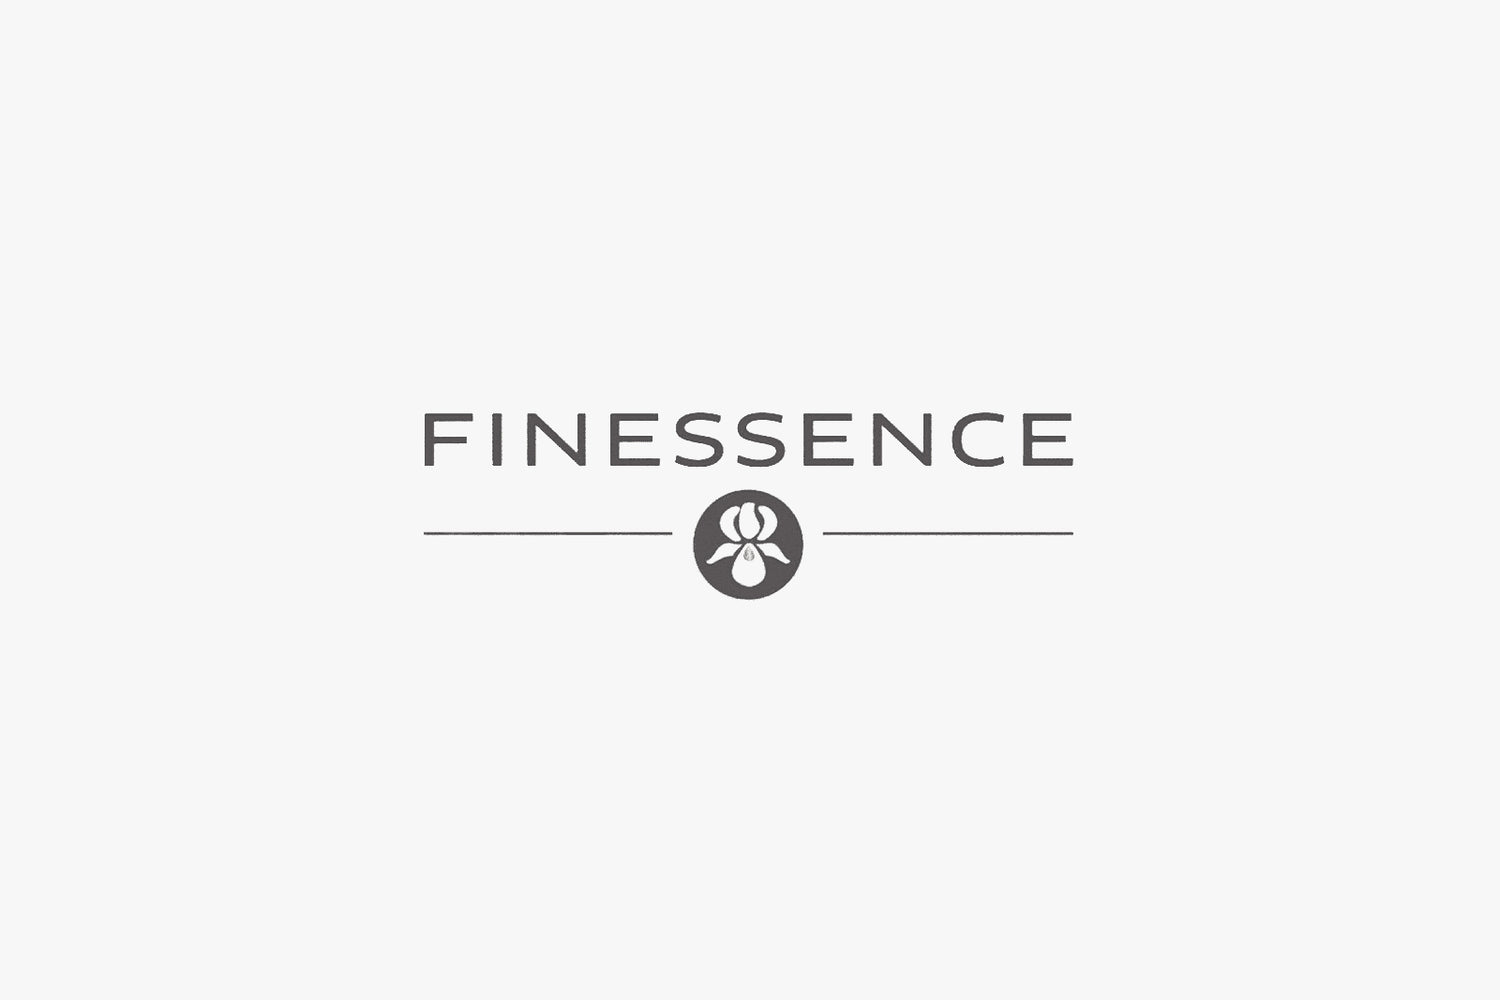 FINESSENCE | フィネッサンス